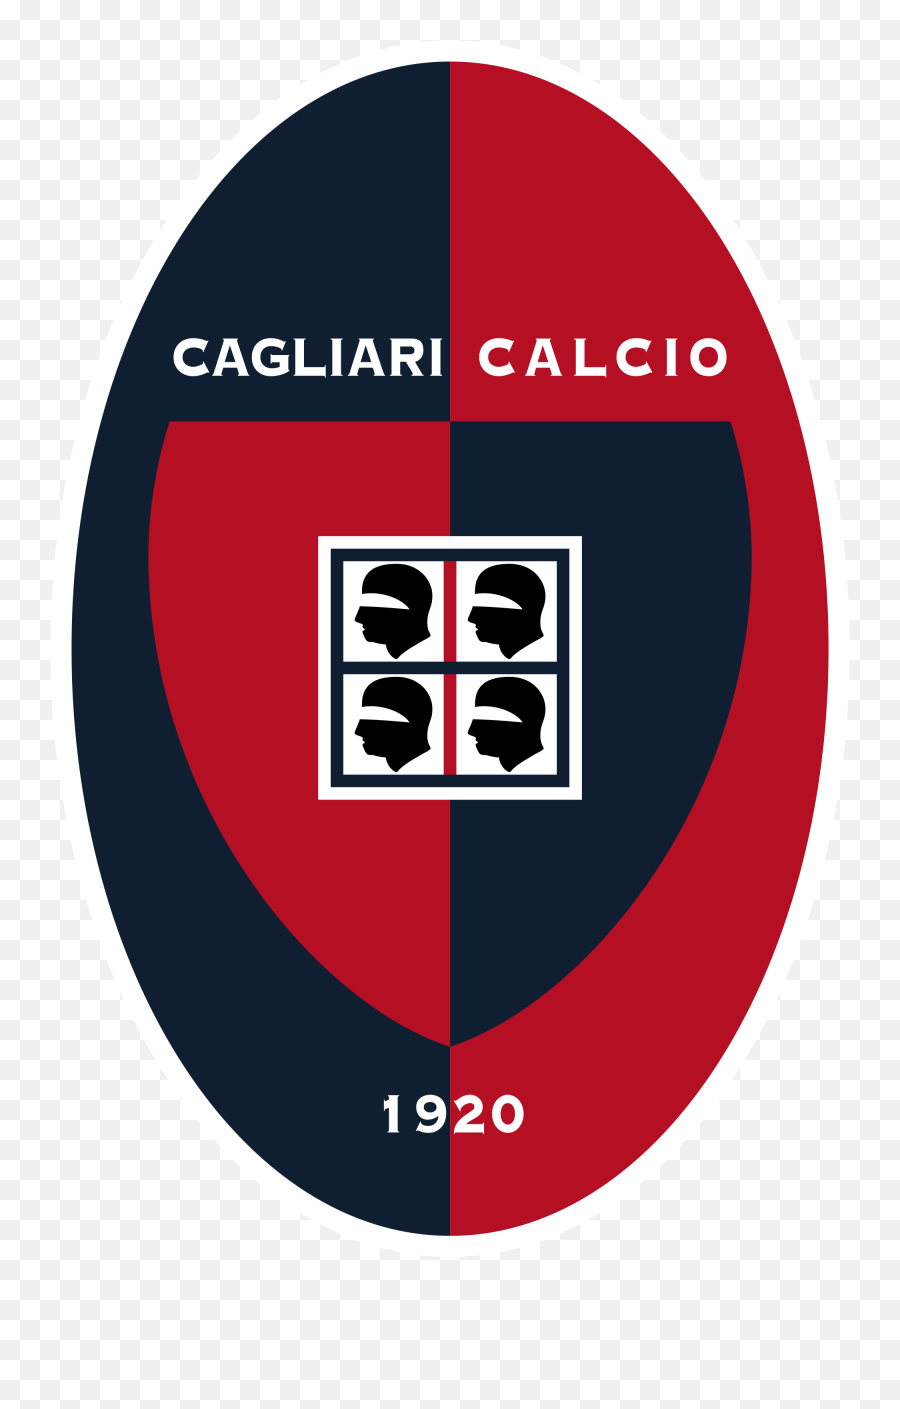 Cagliari Sicily - Cagliari Calcio Png,Top Gear Logos